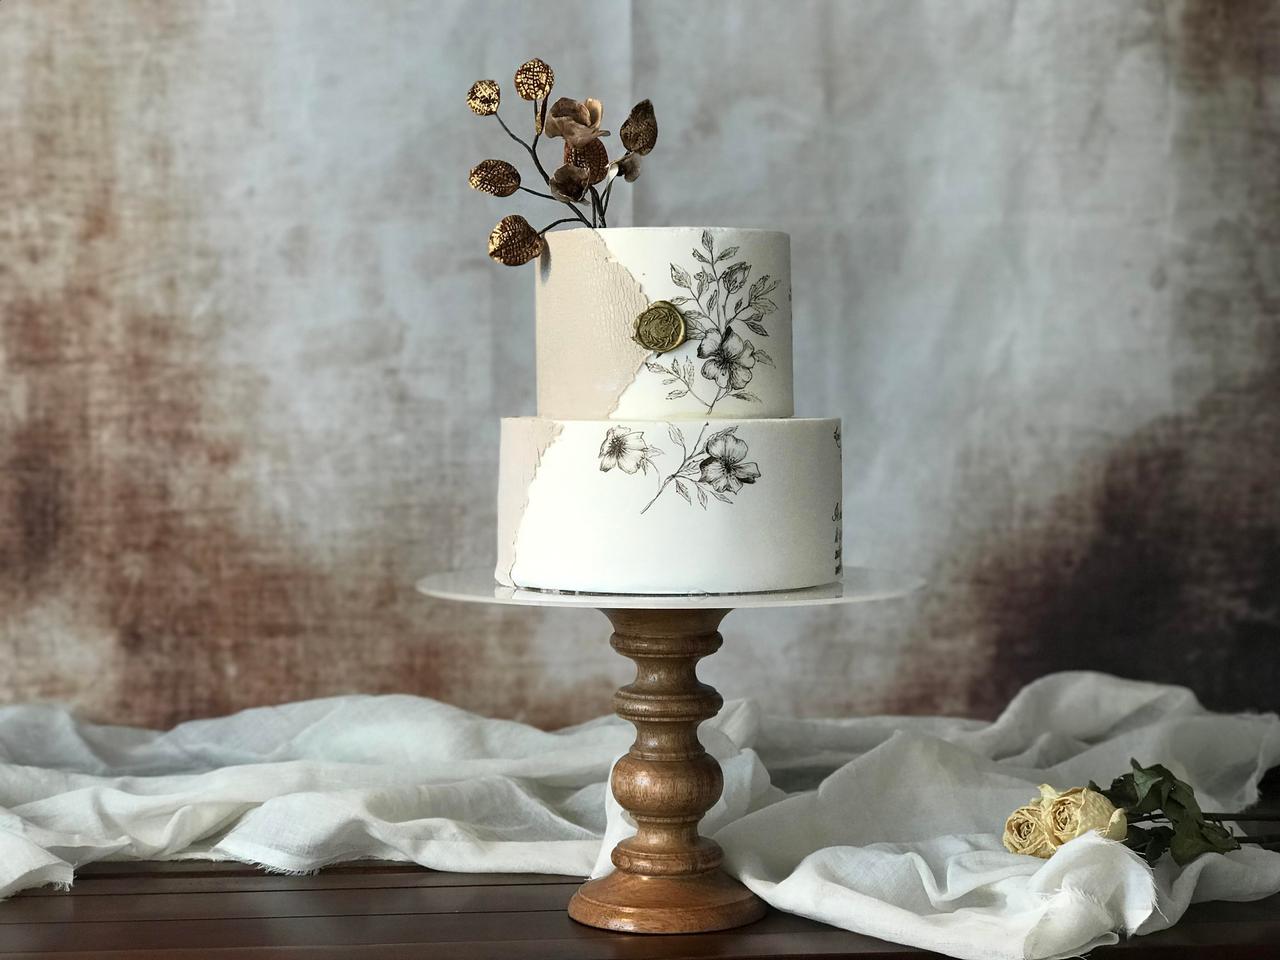 Castle Wedding Cake - Rashmi's Bakery